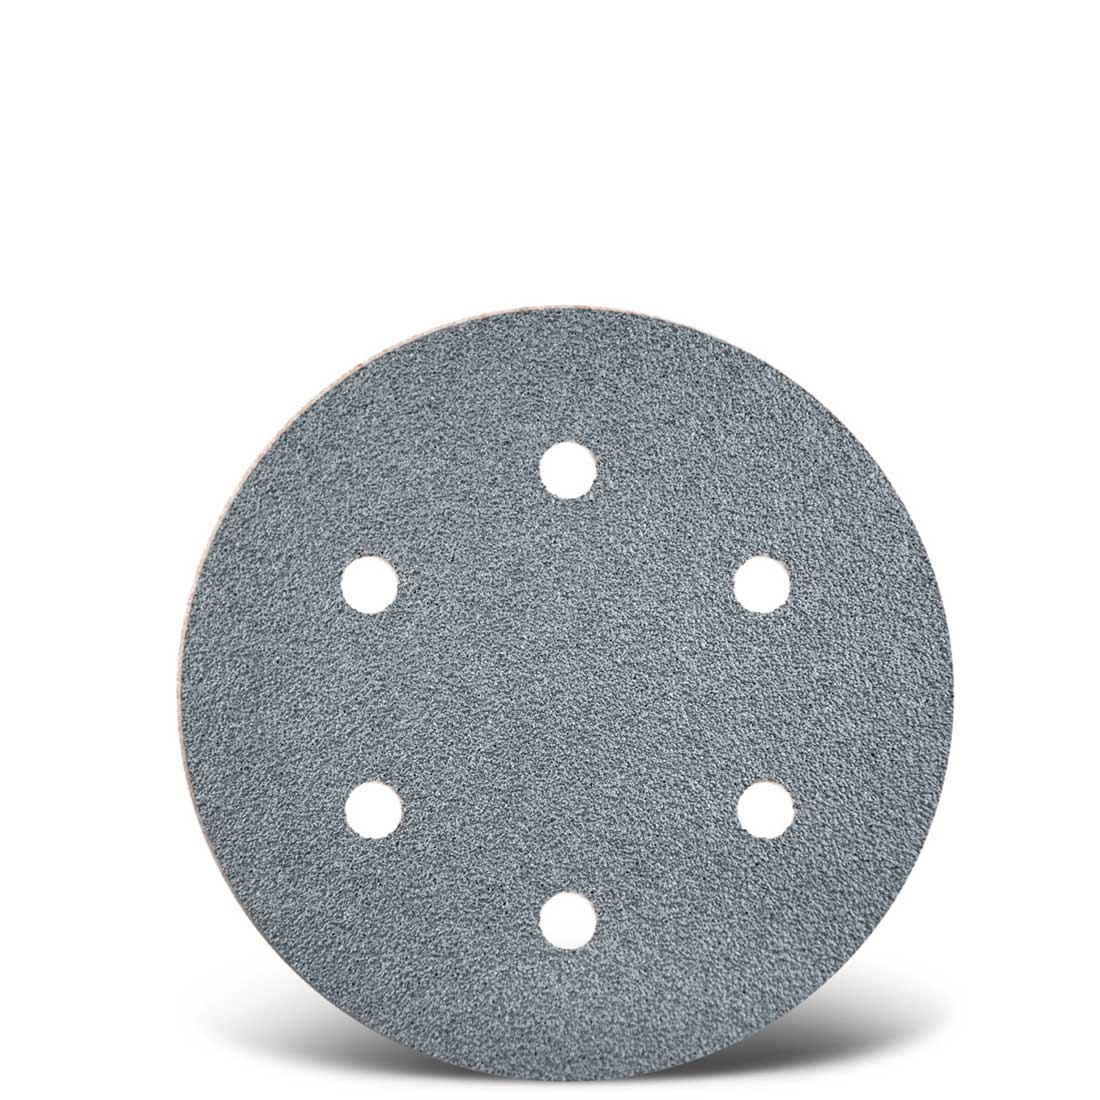 Dischi abrasivi velcrati MENZER per levigatrici rotorbitali, G40–400, Ø 150 mm / 6 fori / corindone semi-friabile con stearato